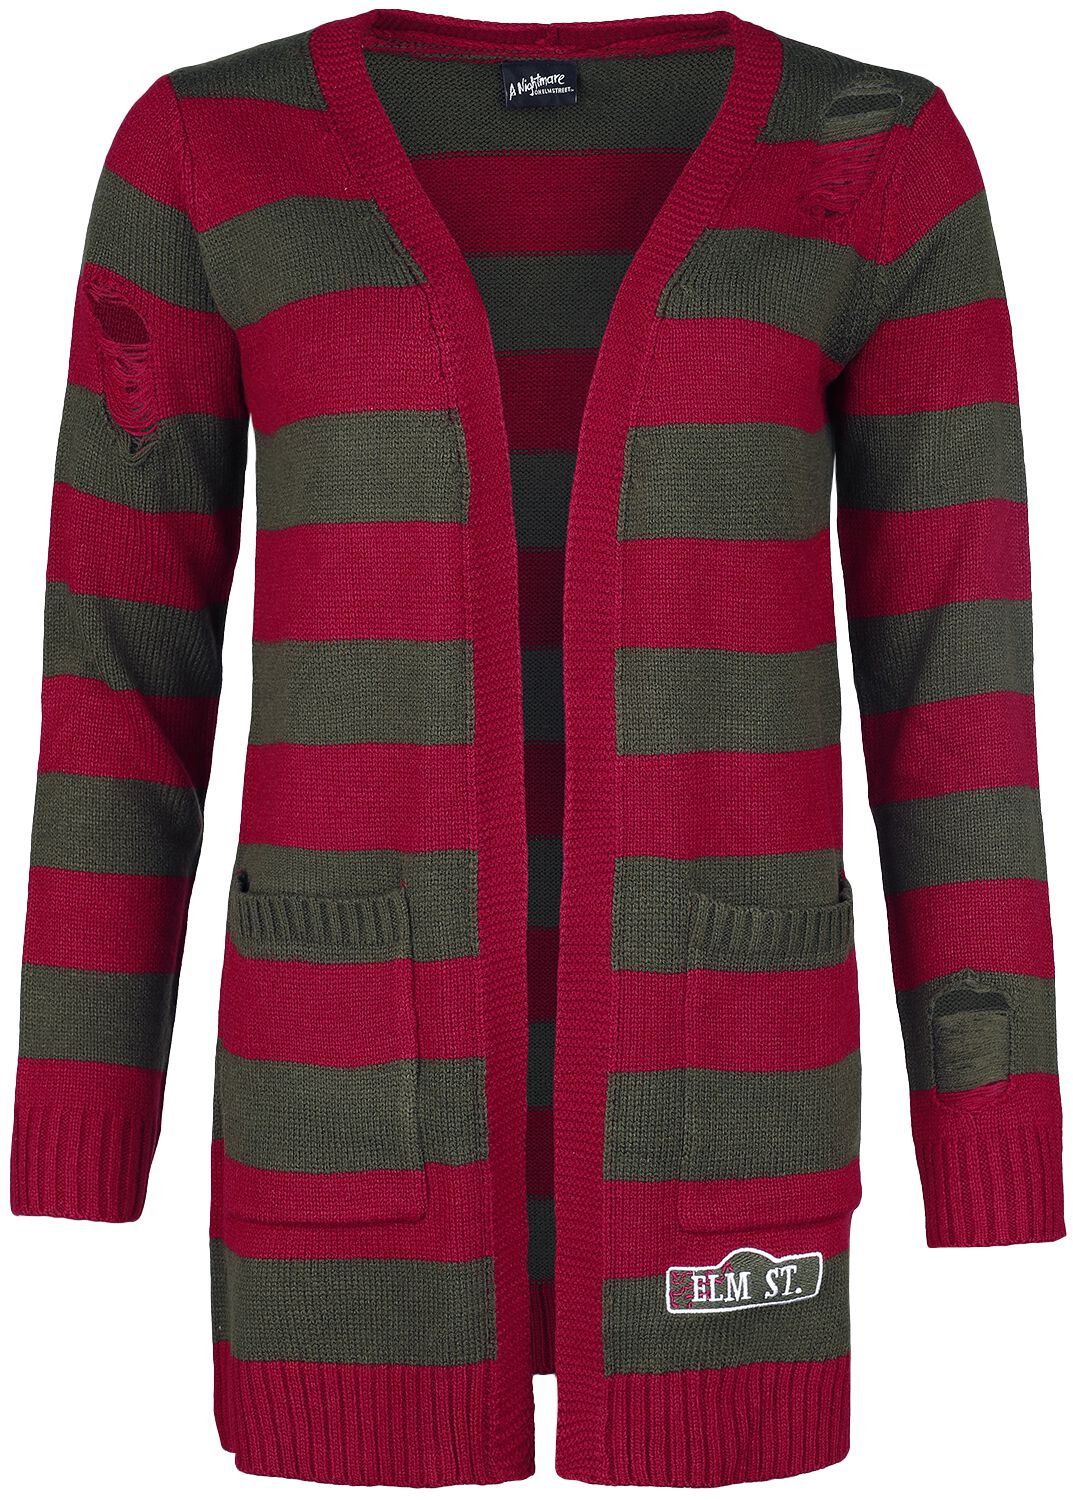 A Nightmare on Elm Street Cardigan - Elmstreet - S bis XXL - für Damen - Größe XL - rot/grün  - EMP exklusives Merchandise!